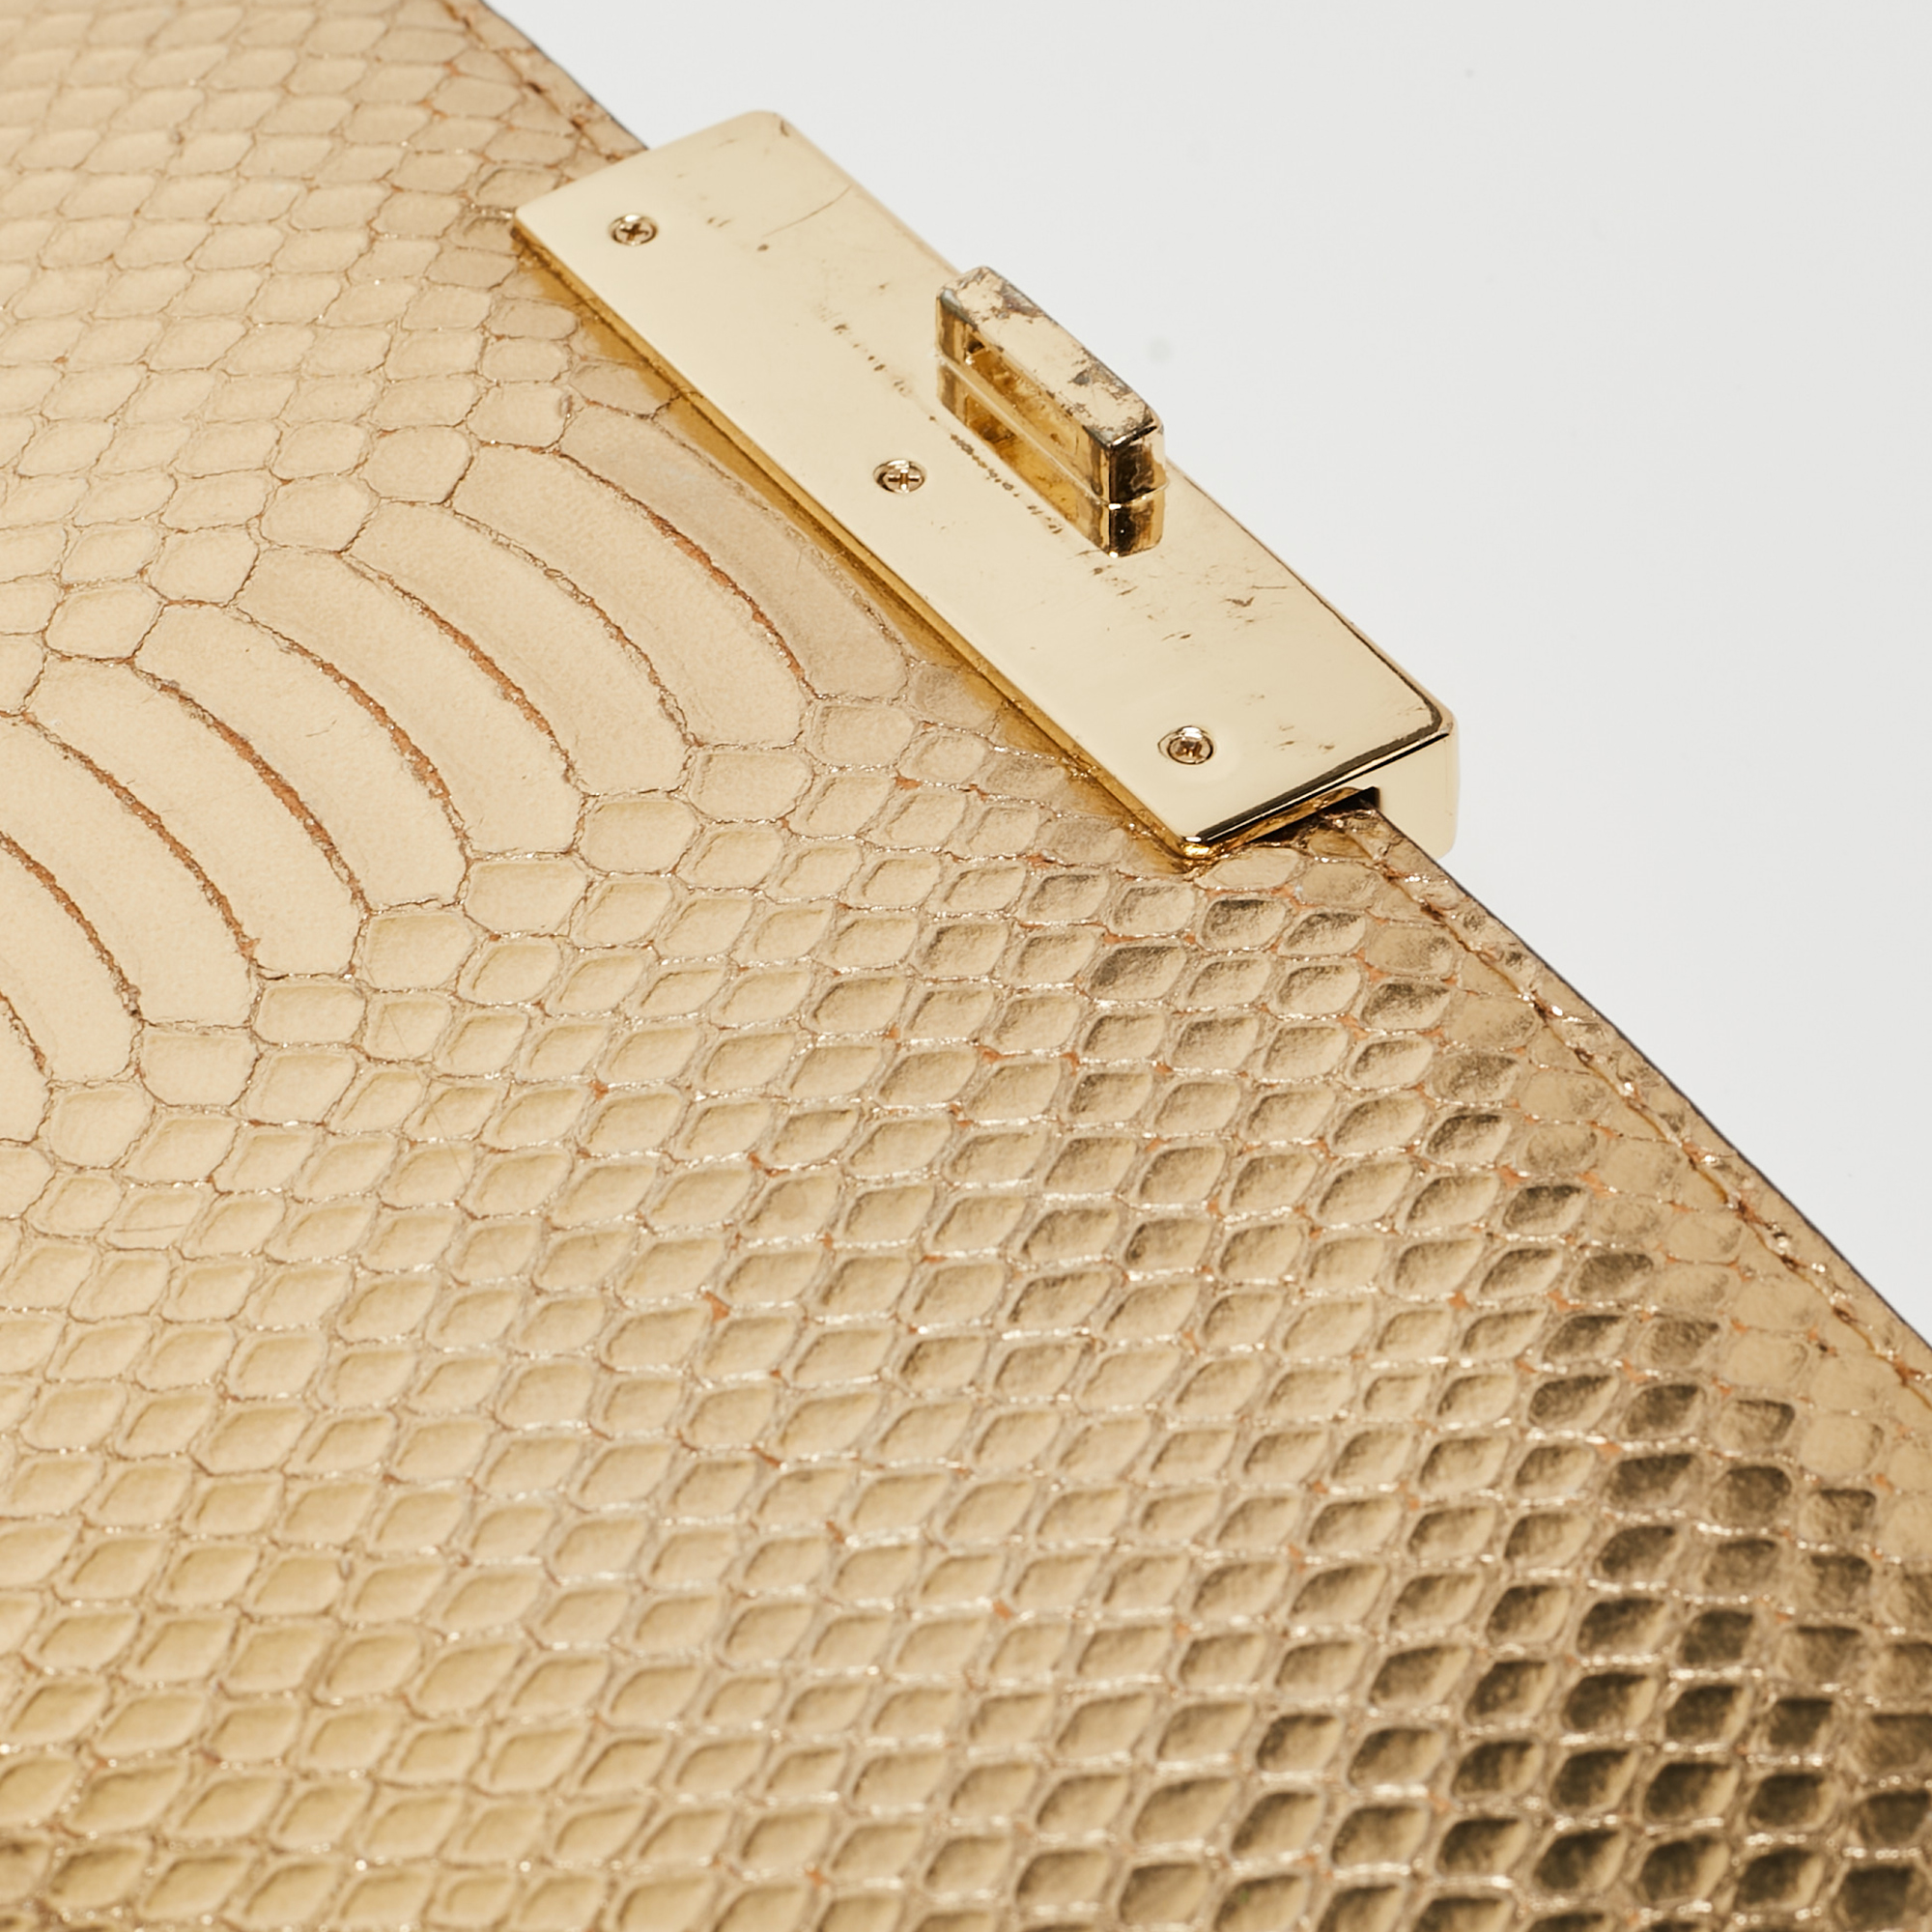 Michael Kors Gold Python Embossed Leather Piper Shoulder Bag